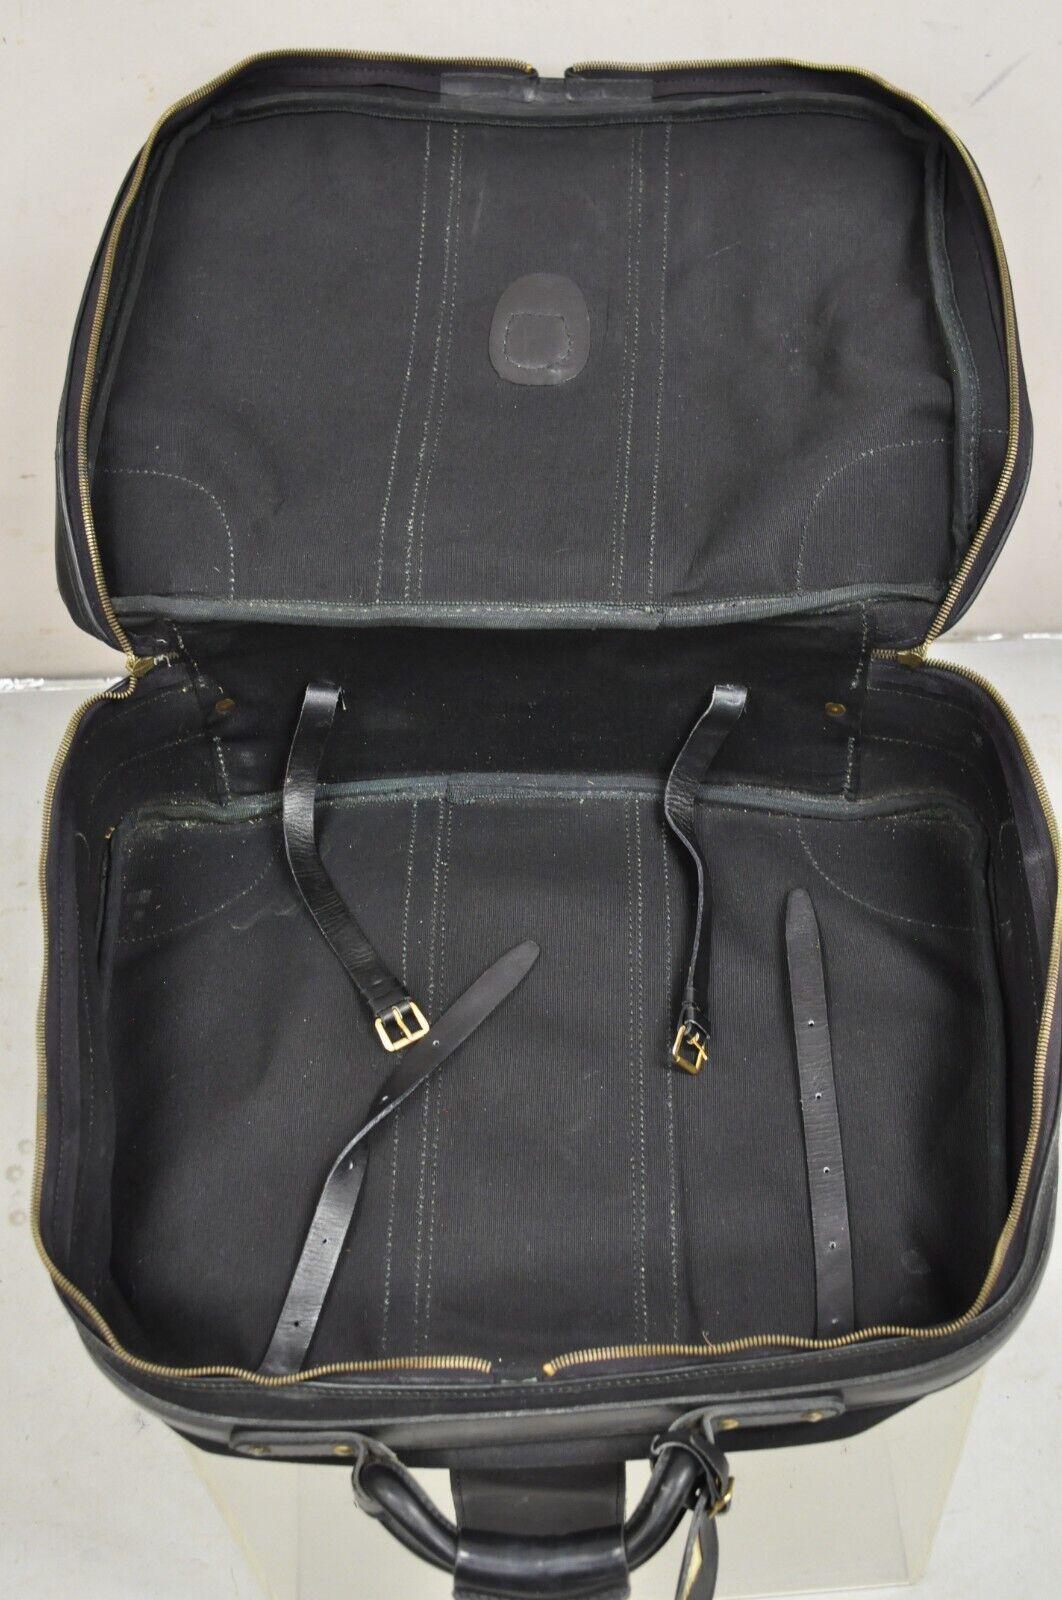 Vintage Gucci Black Canvas & Leather Suitcase Luggage Travel Bag Set - 2 Pcs For Sale 5